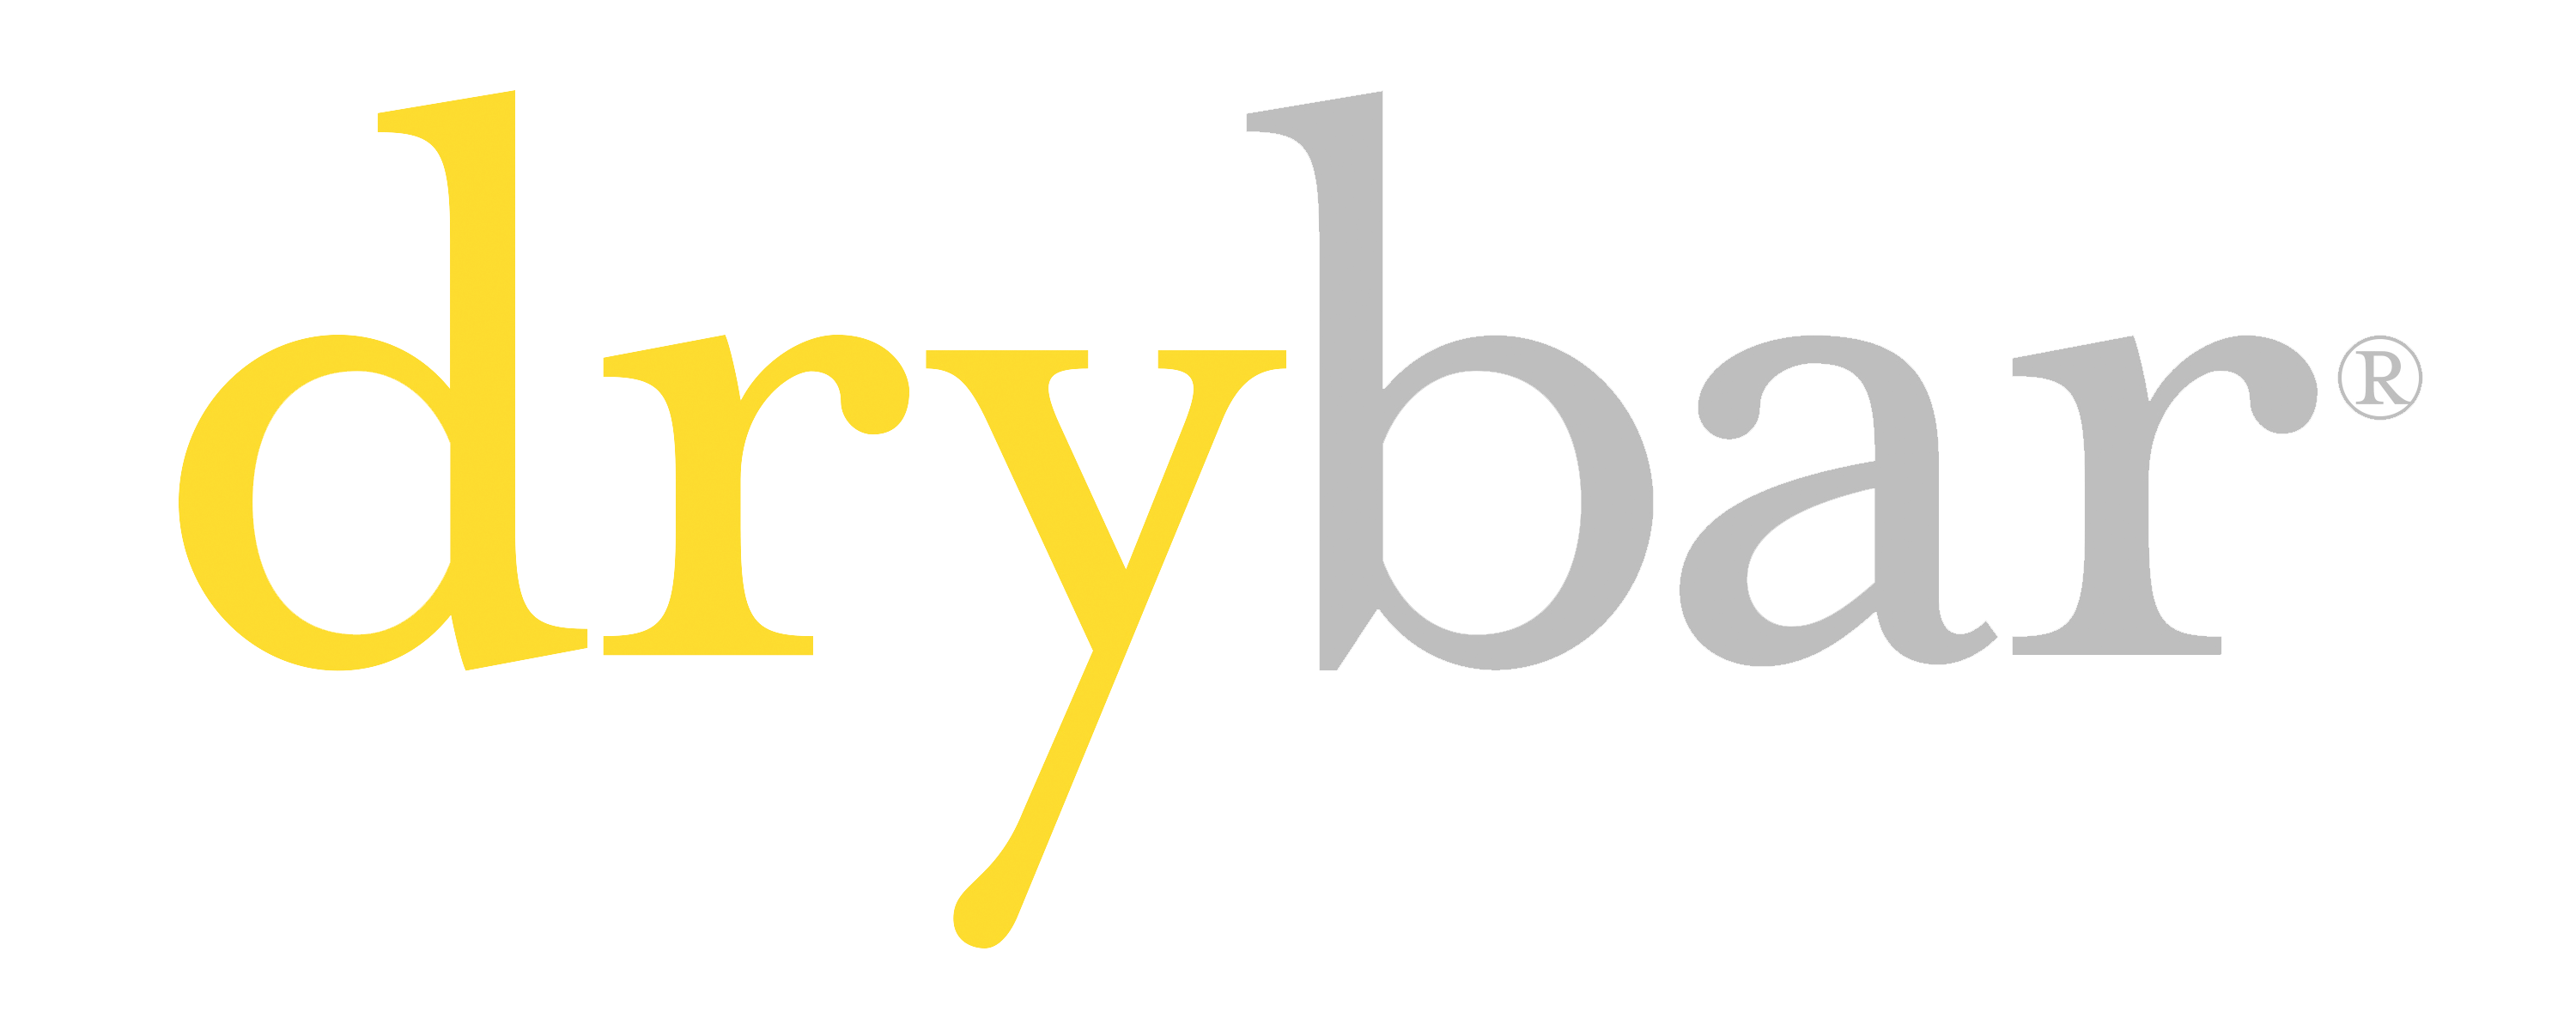 Drybar Logo - Drybar - Heartbeat